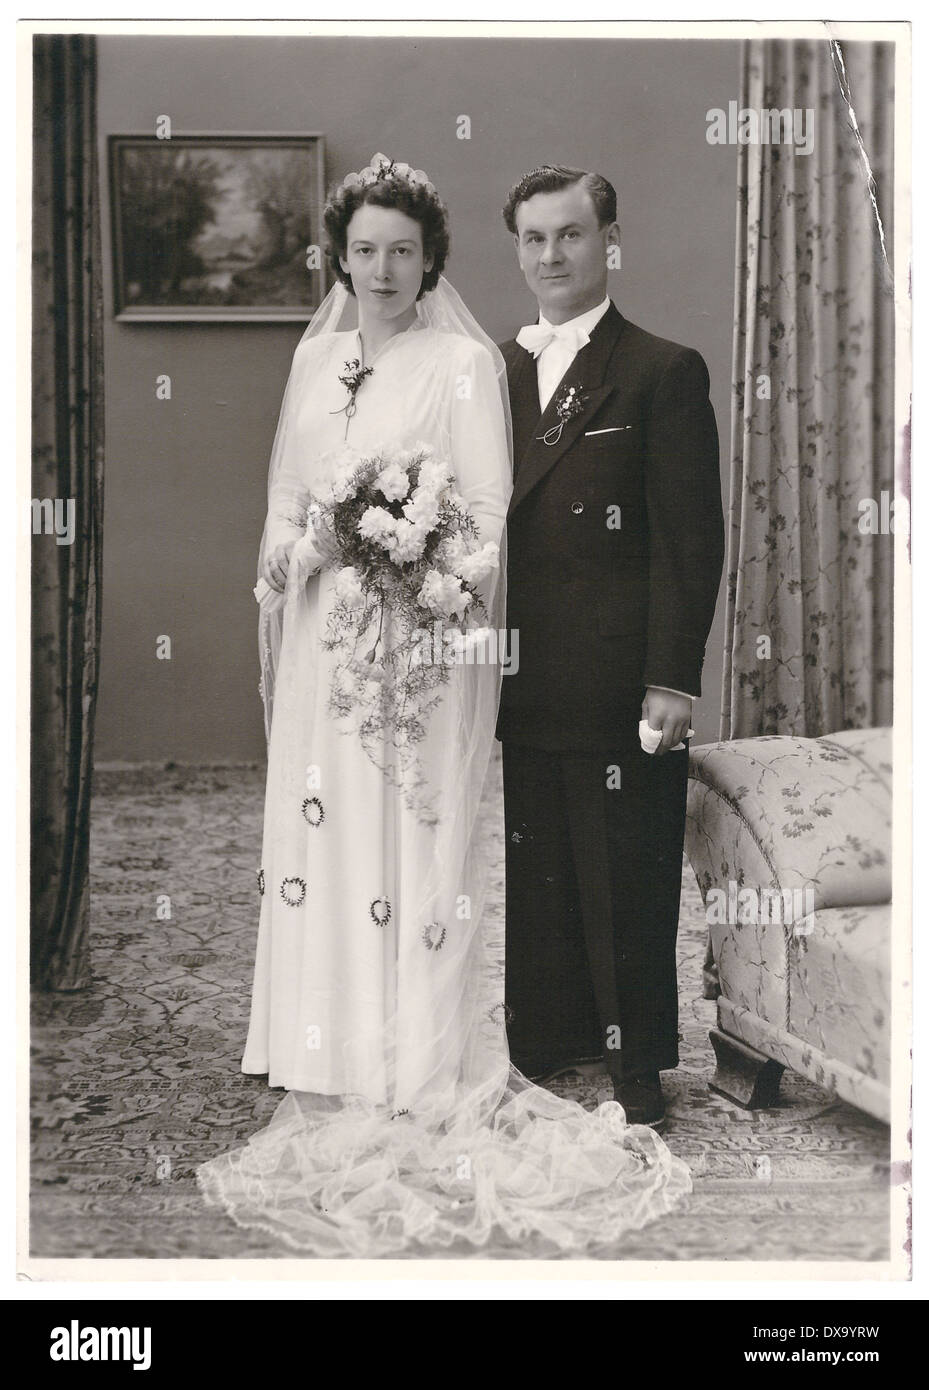 Monaco di Baviera, Germania - circa 1950: vintage wedding photo. ritratto di appena una coppia sposata. sposa e lo sposo che indossa abiti d'epoca. Foto Stock